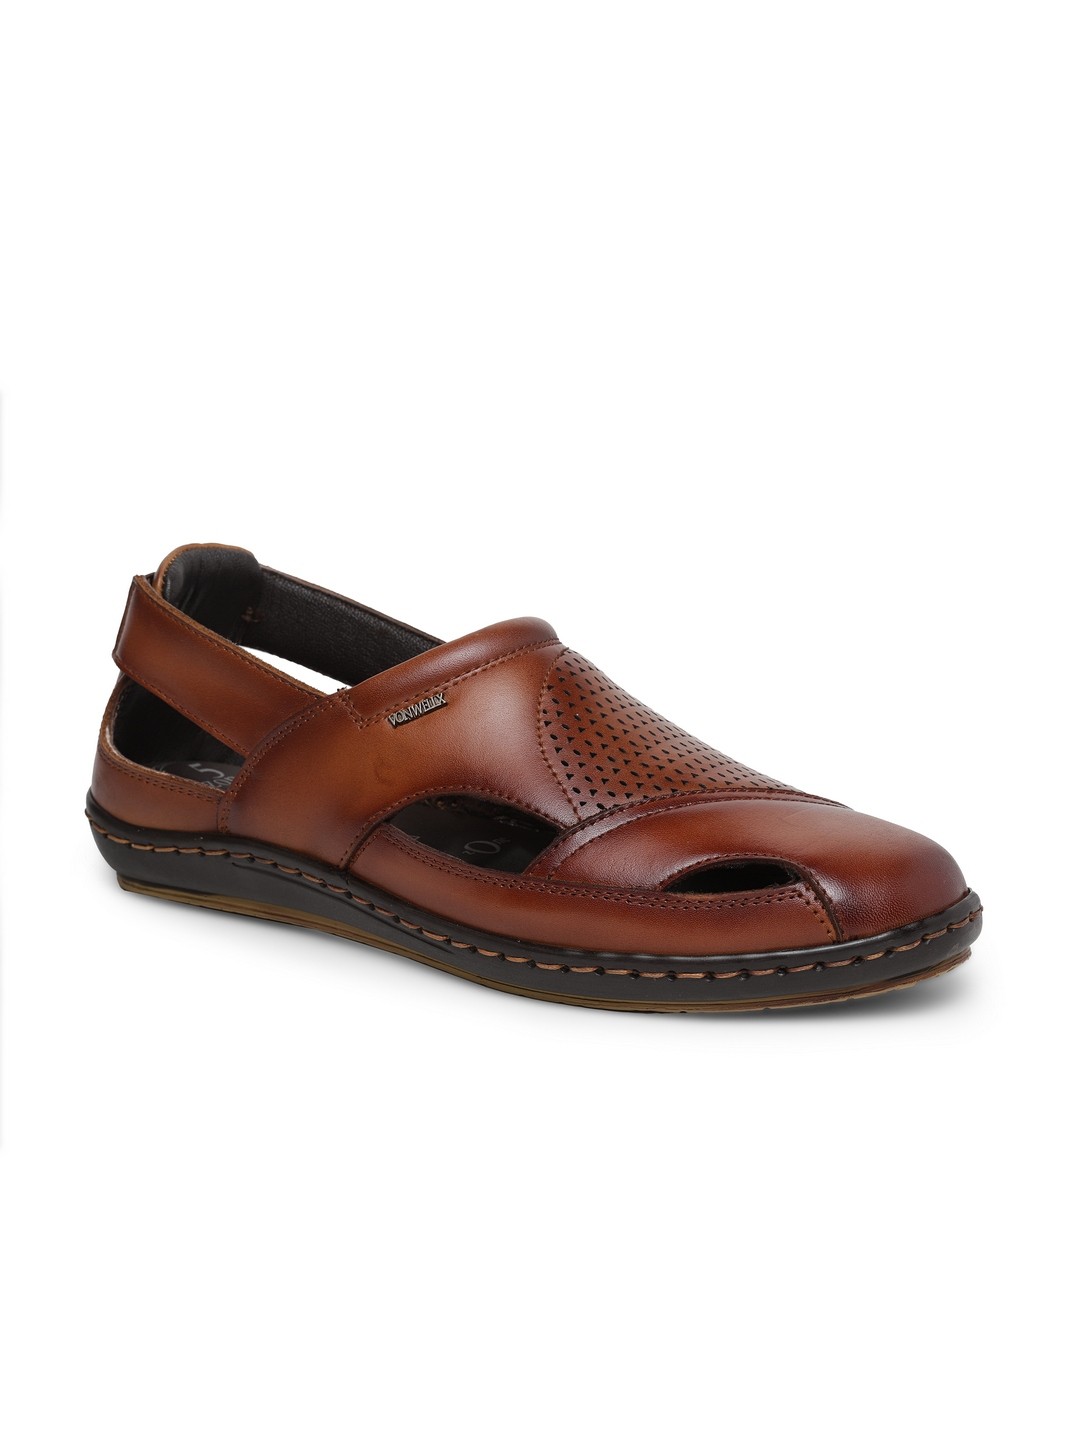 Buy Von Wellx Germany Comfort Men's Tan Sandal Eddie Online in Dhanbad